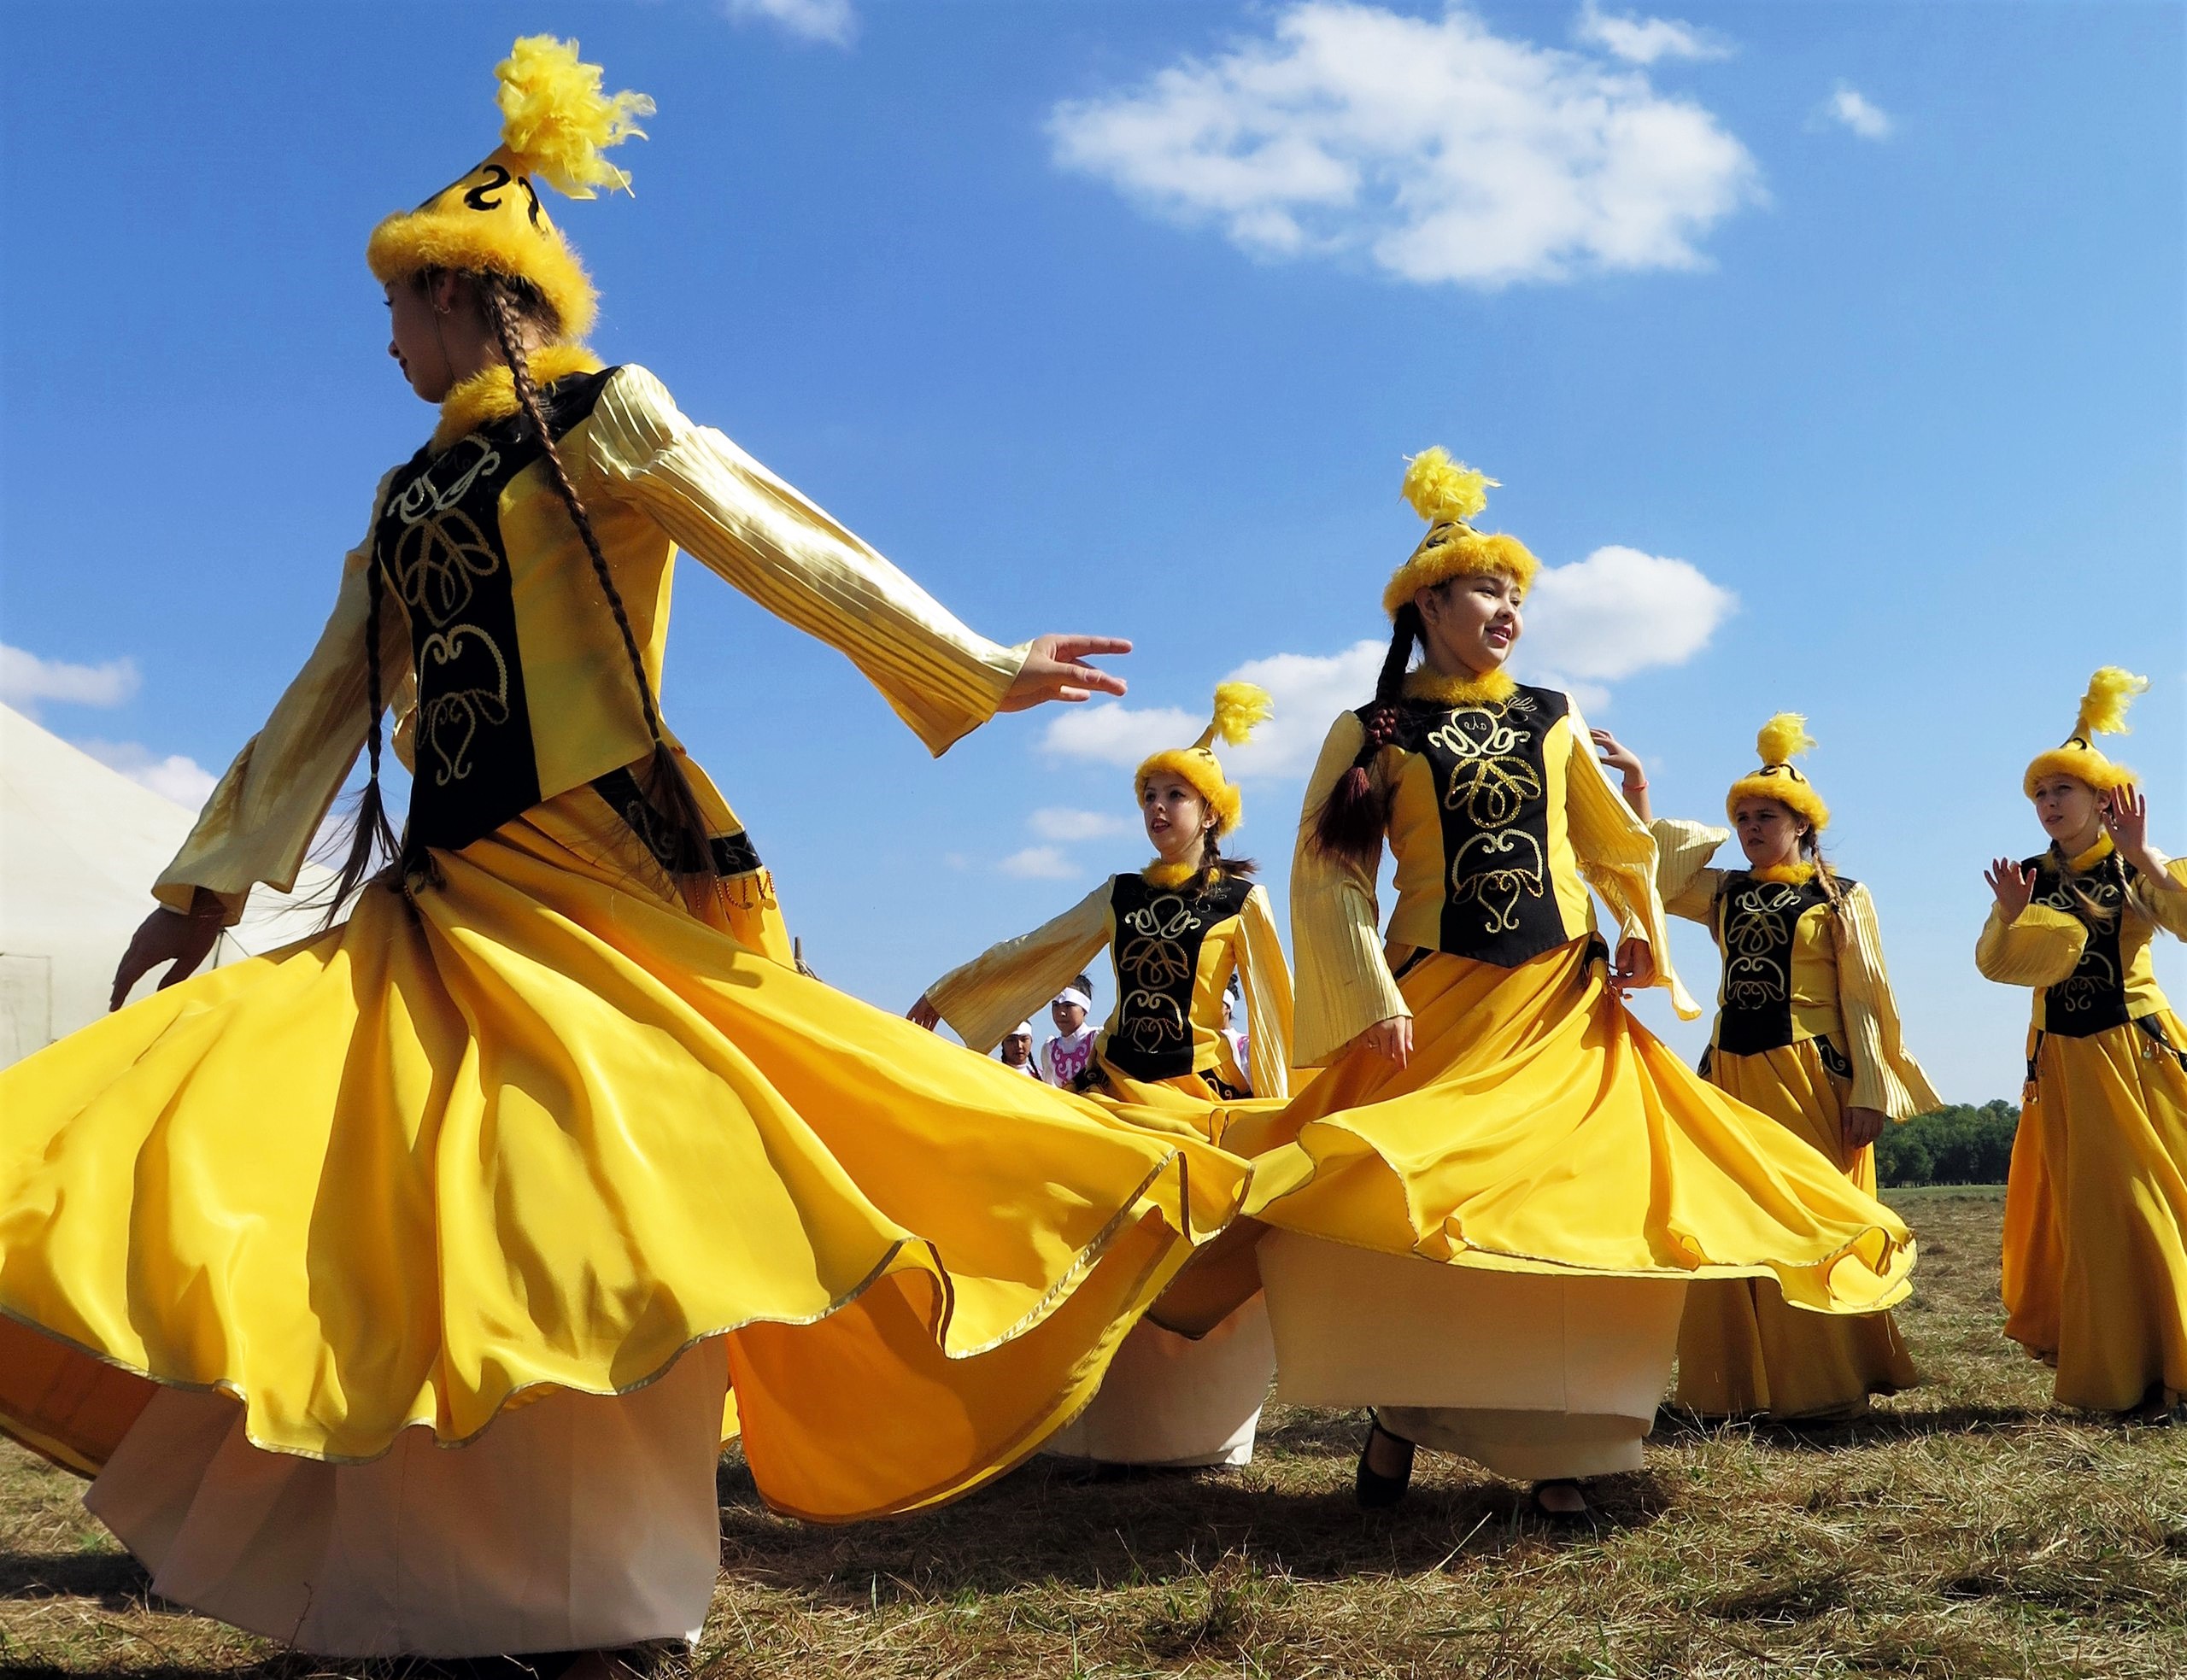 Kazakh traditional. Культура Казахстана. Казахская культура. Казахский танец. Национальные казахские праздники и традиции.